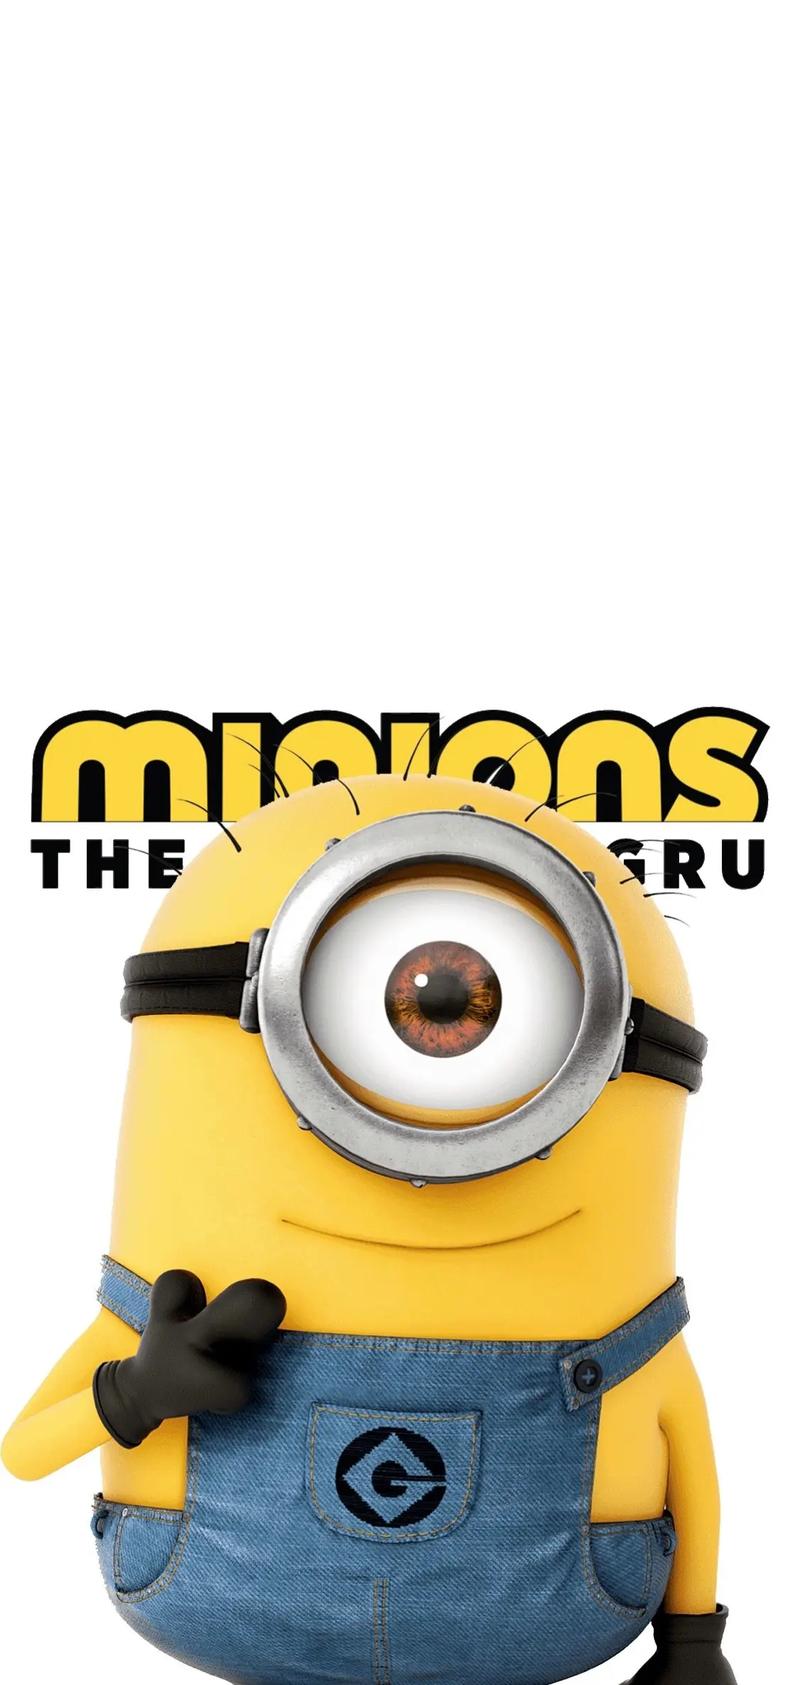 《小黄人大眼萌》minions是一部2015年的美国喜剧动画 - 抖音